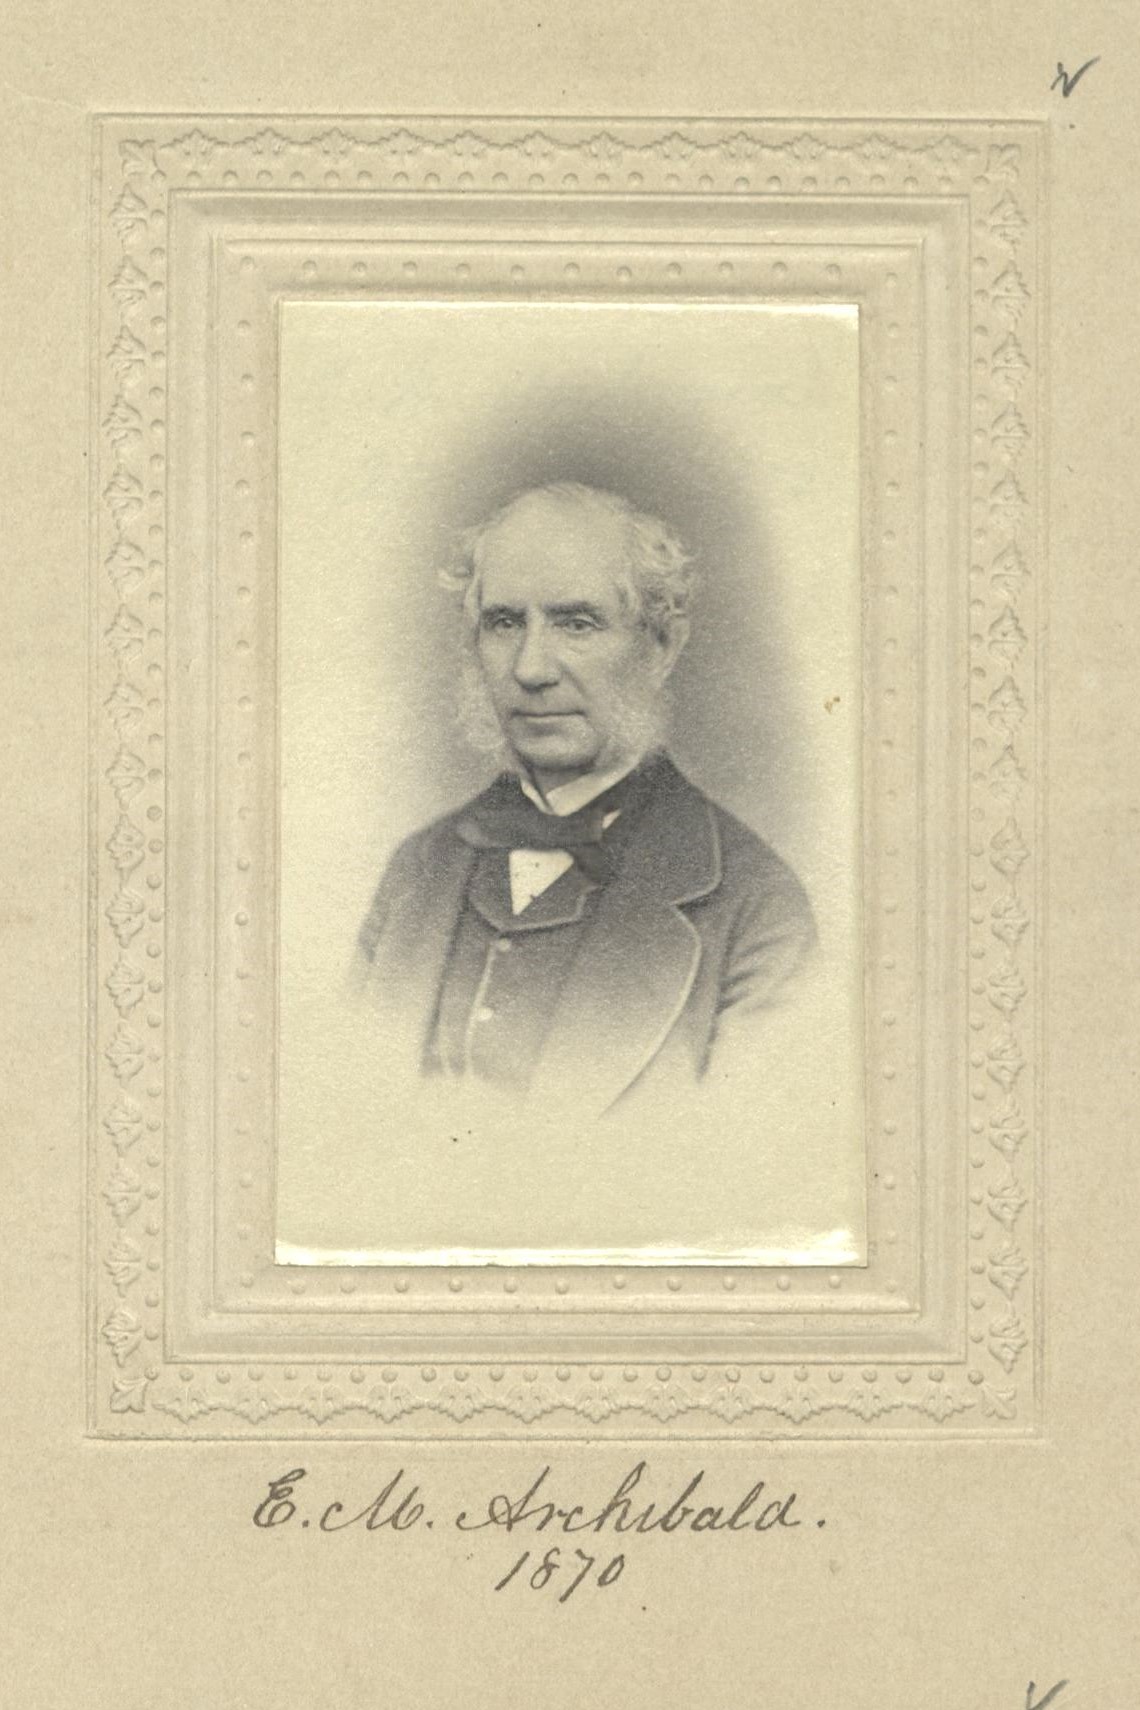 Member portrait of Edward M. Archibald